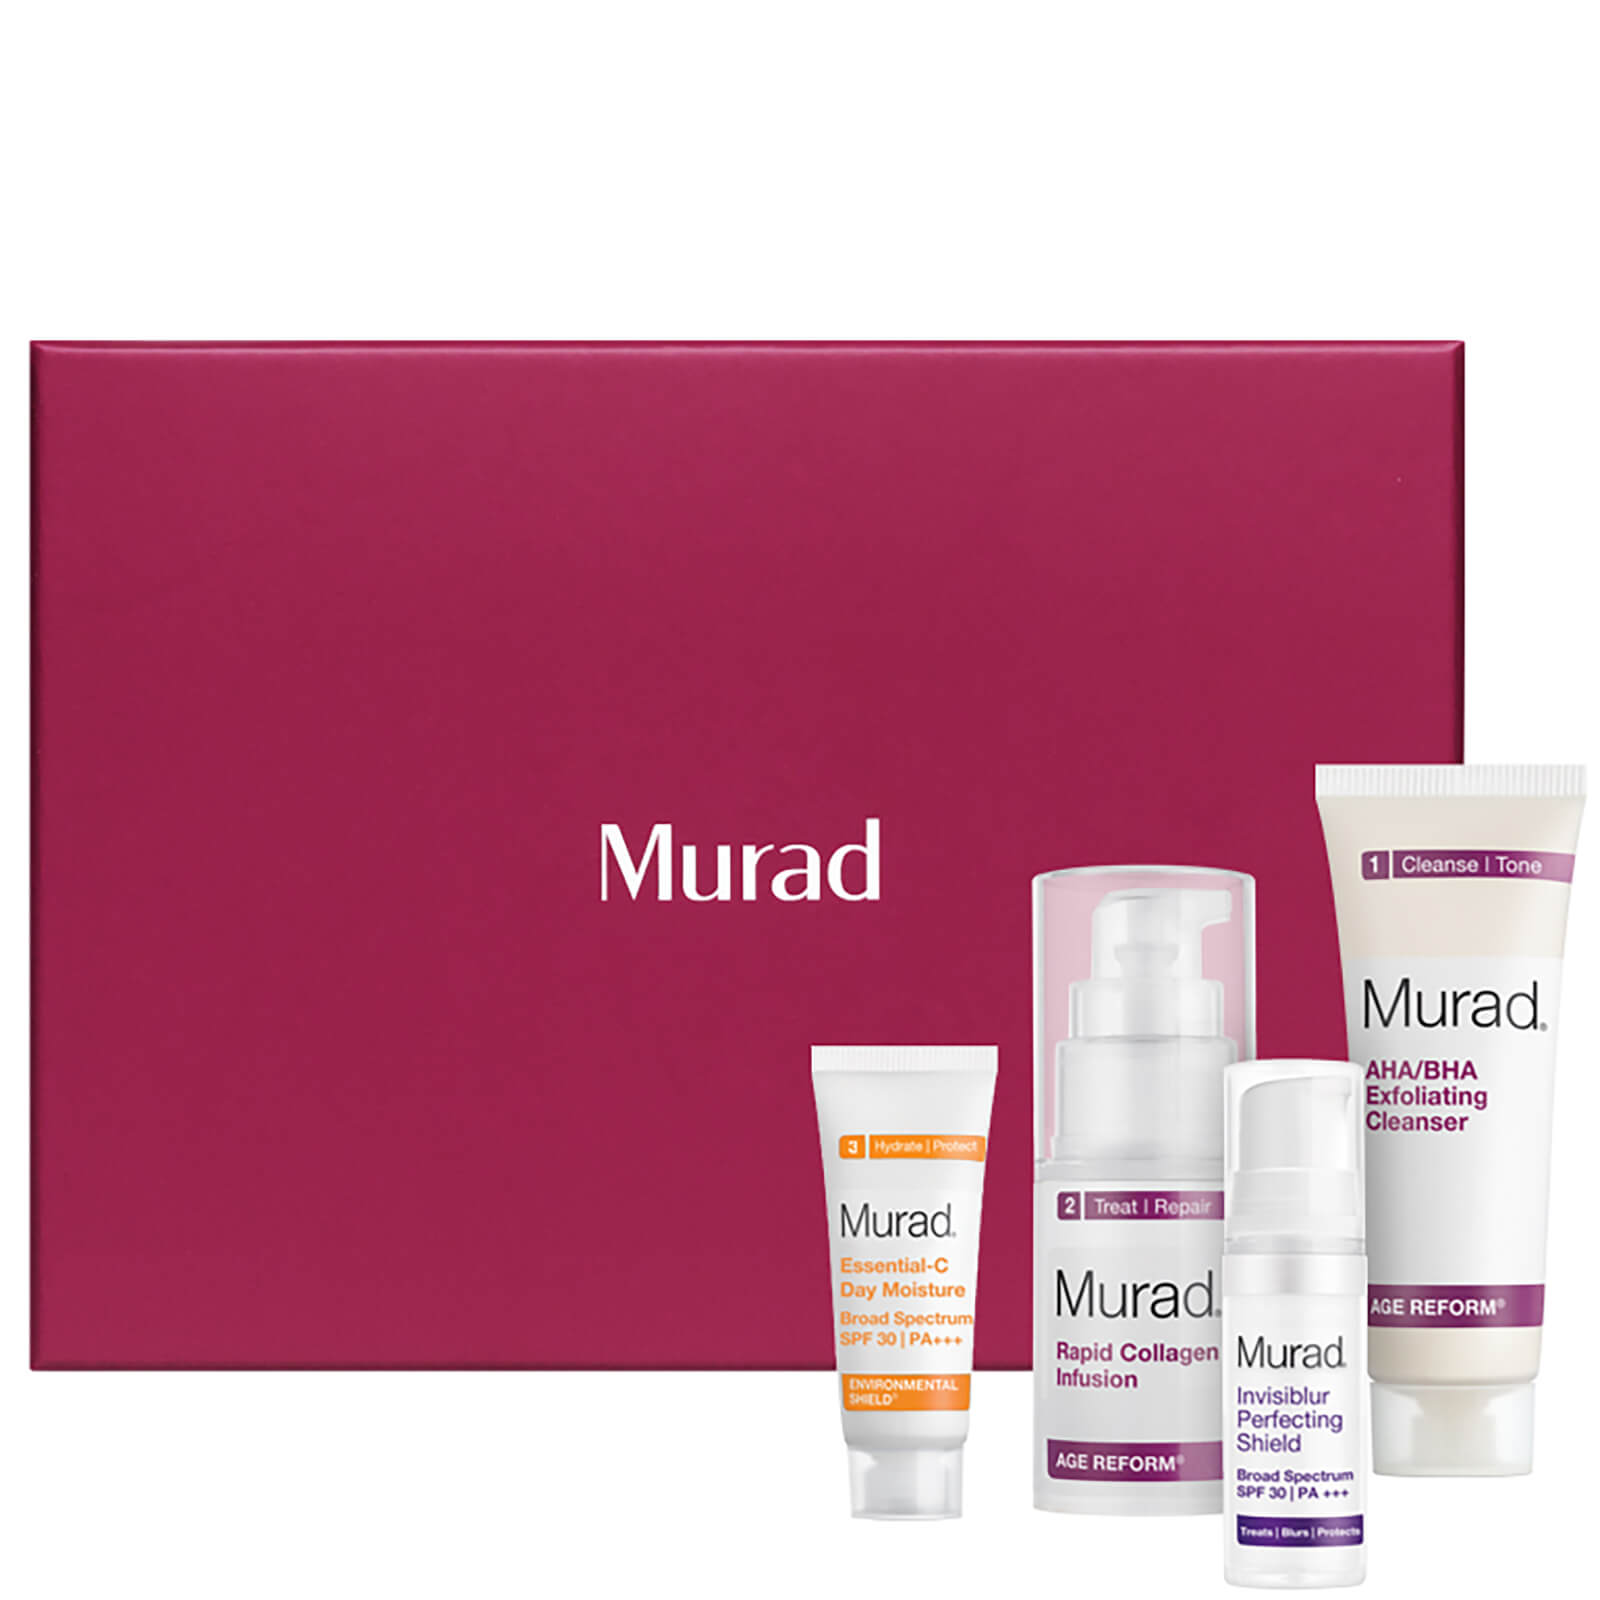 Murad Exclusive - The Complete Skincare Regime